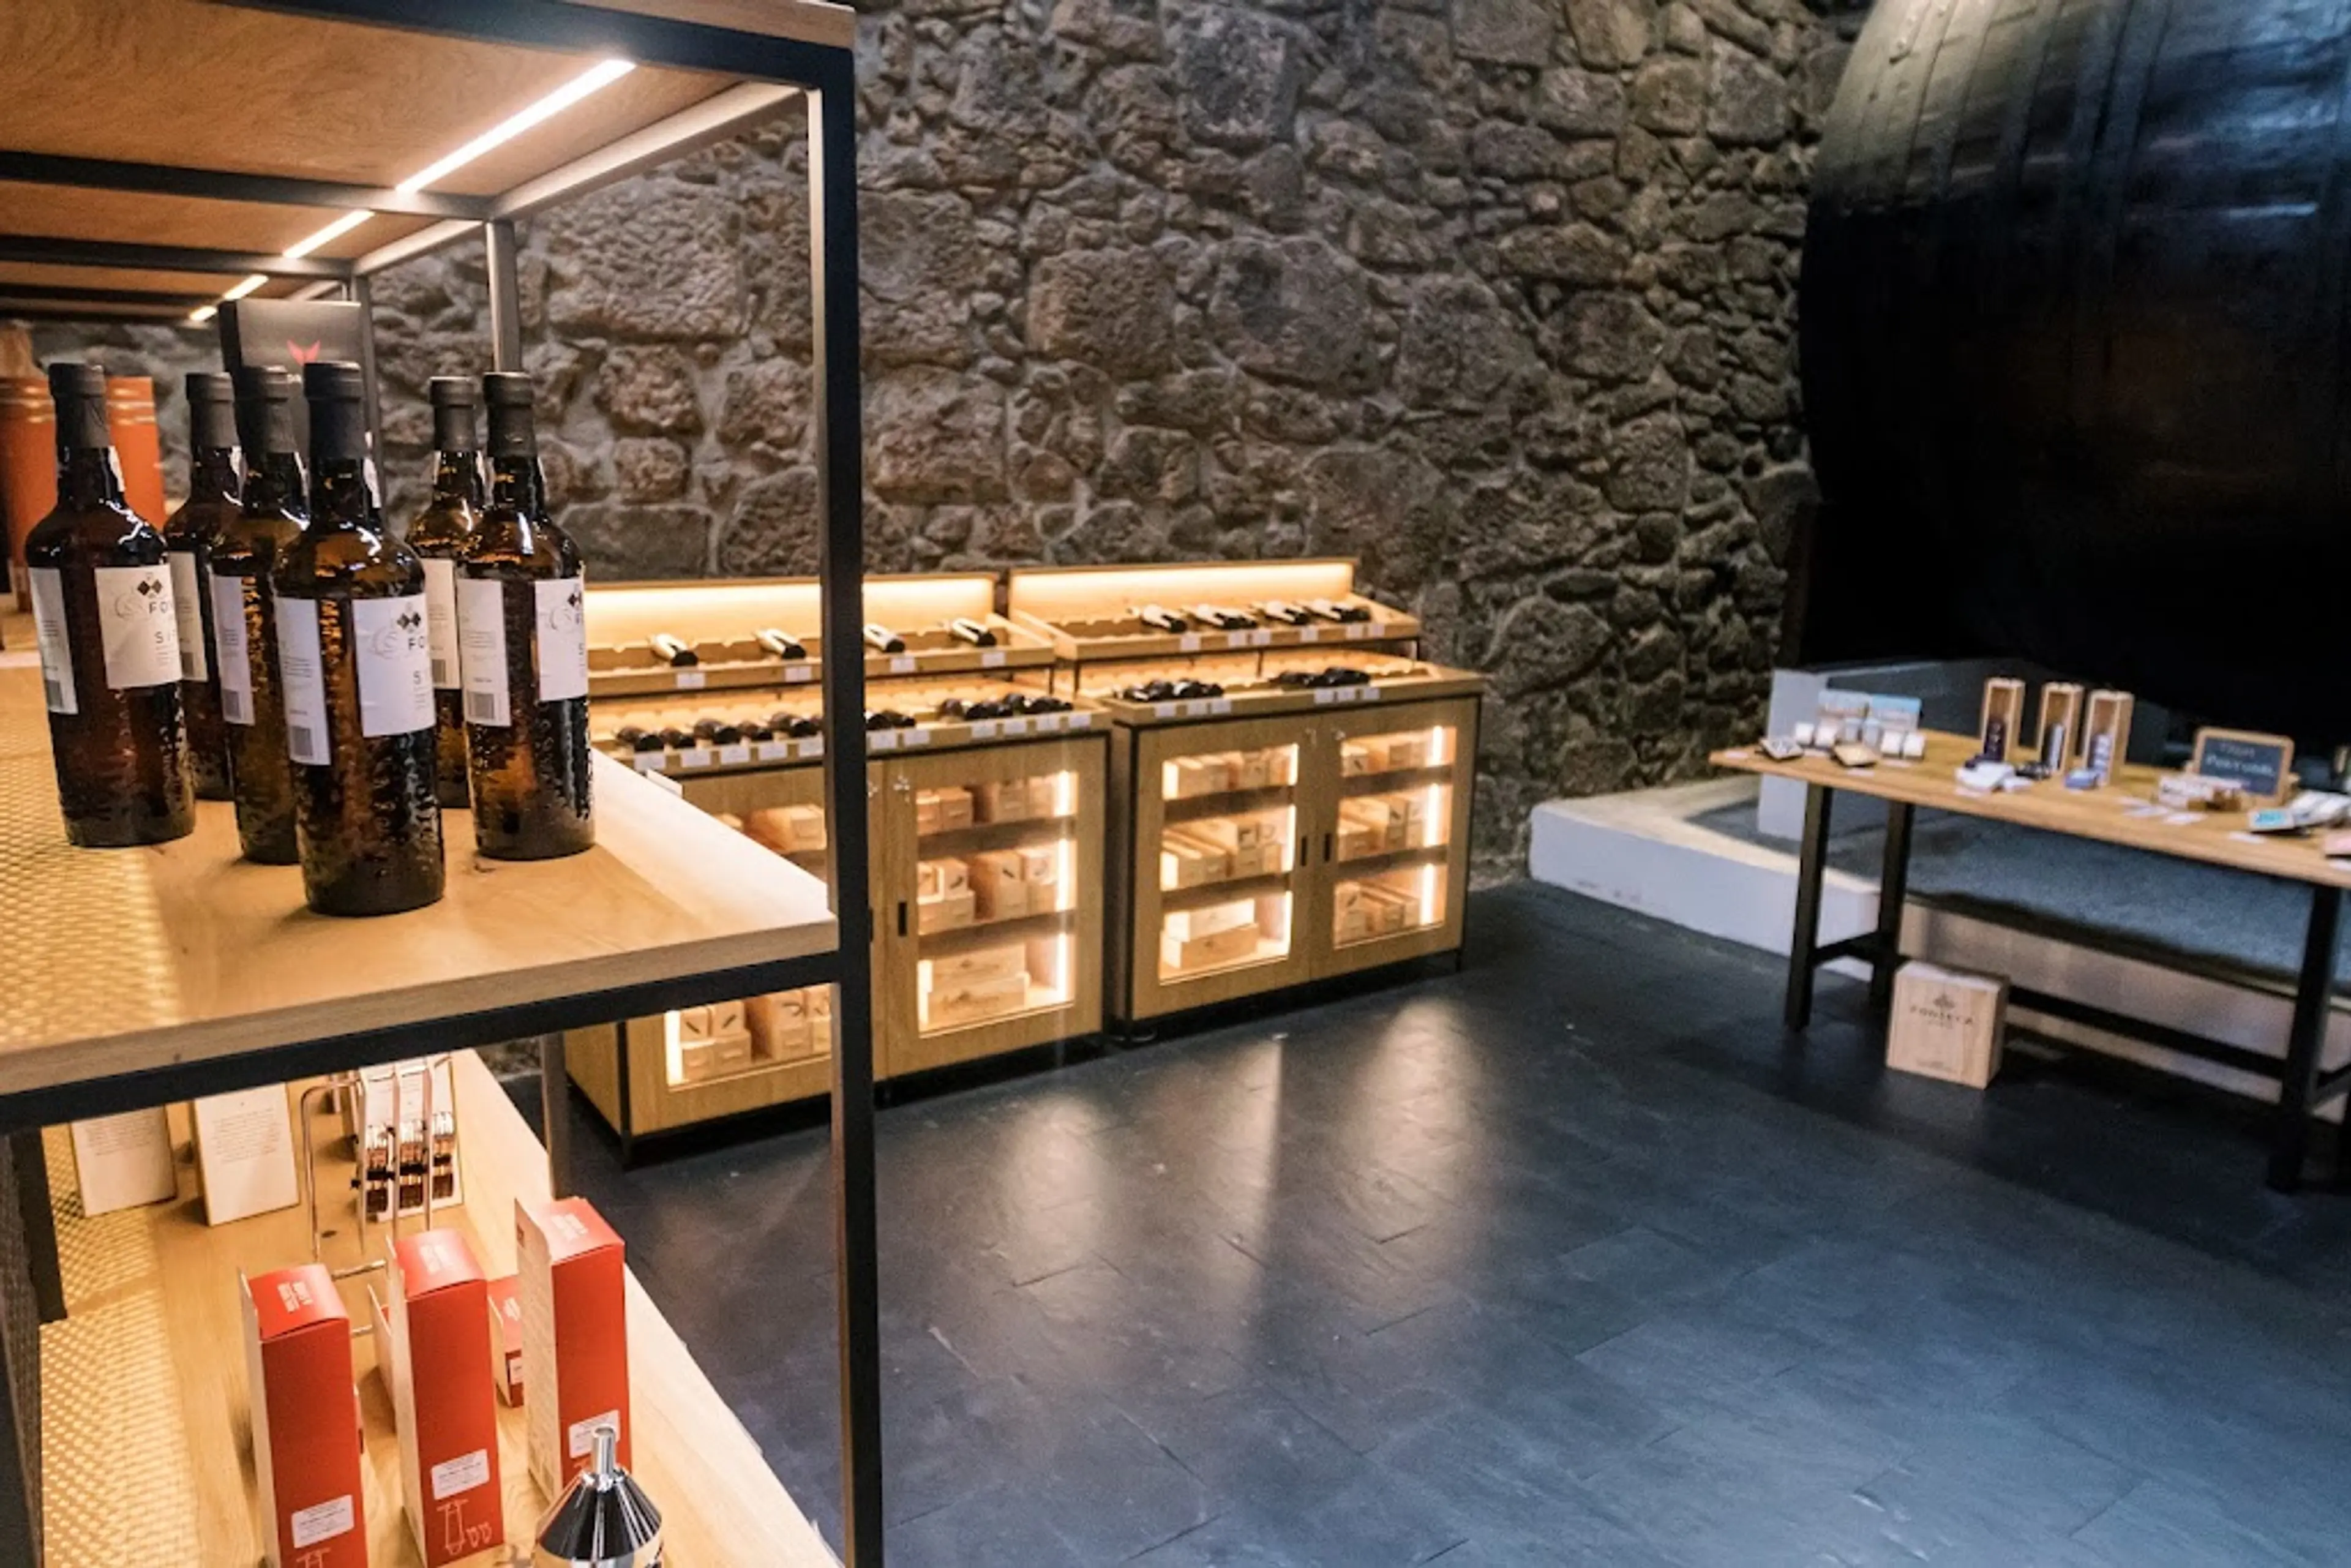 Vila Nova de Gaia wine cellars